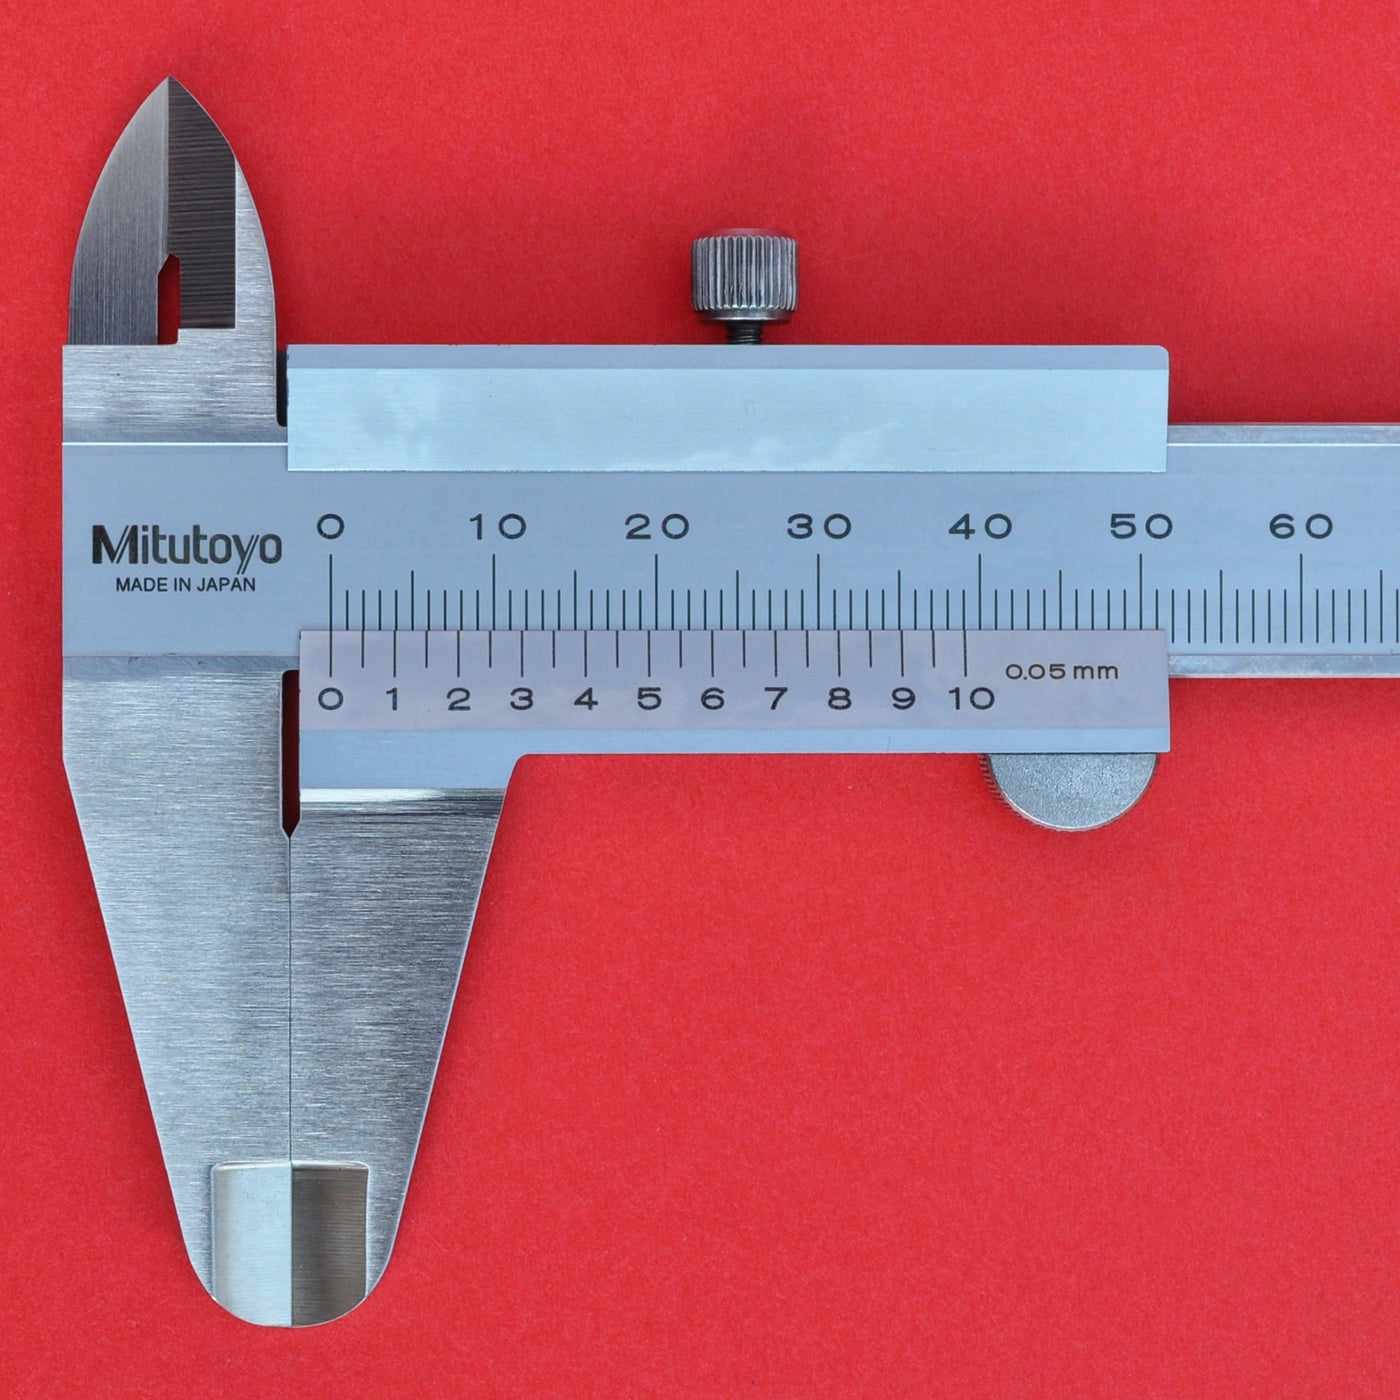 MITUTOYO 15 cm Pied à coulisse à vernier N15 530-101 japon japonais - Osaka  Tools